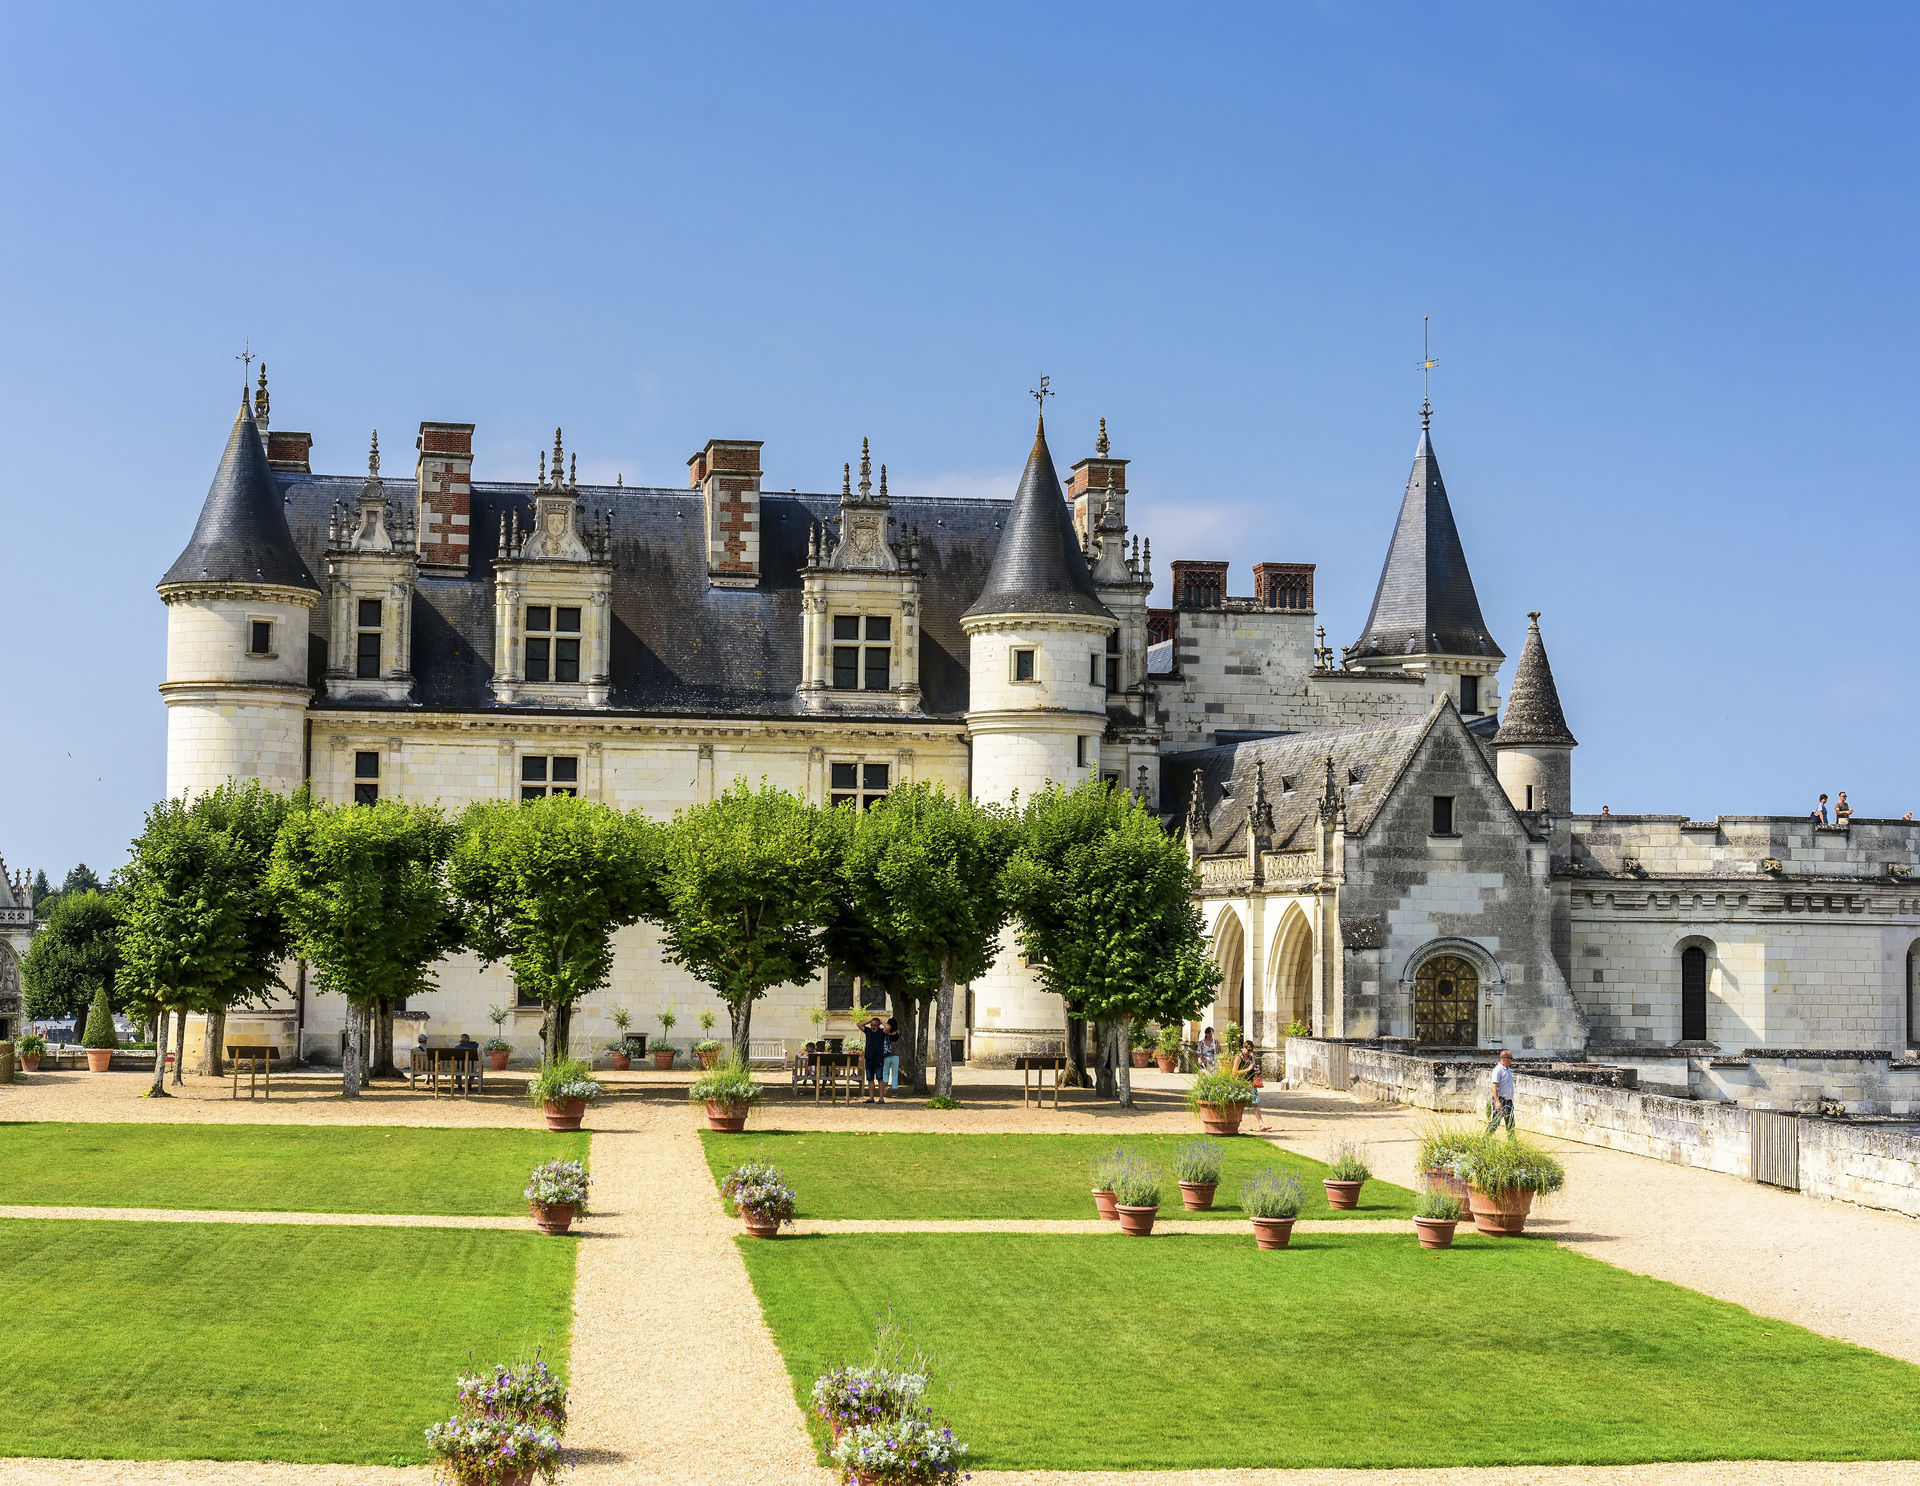 Best Western Premier Hôtel de la cité Royale - Chateau amboise